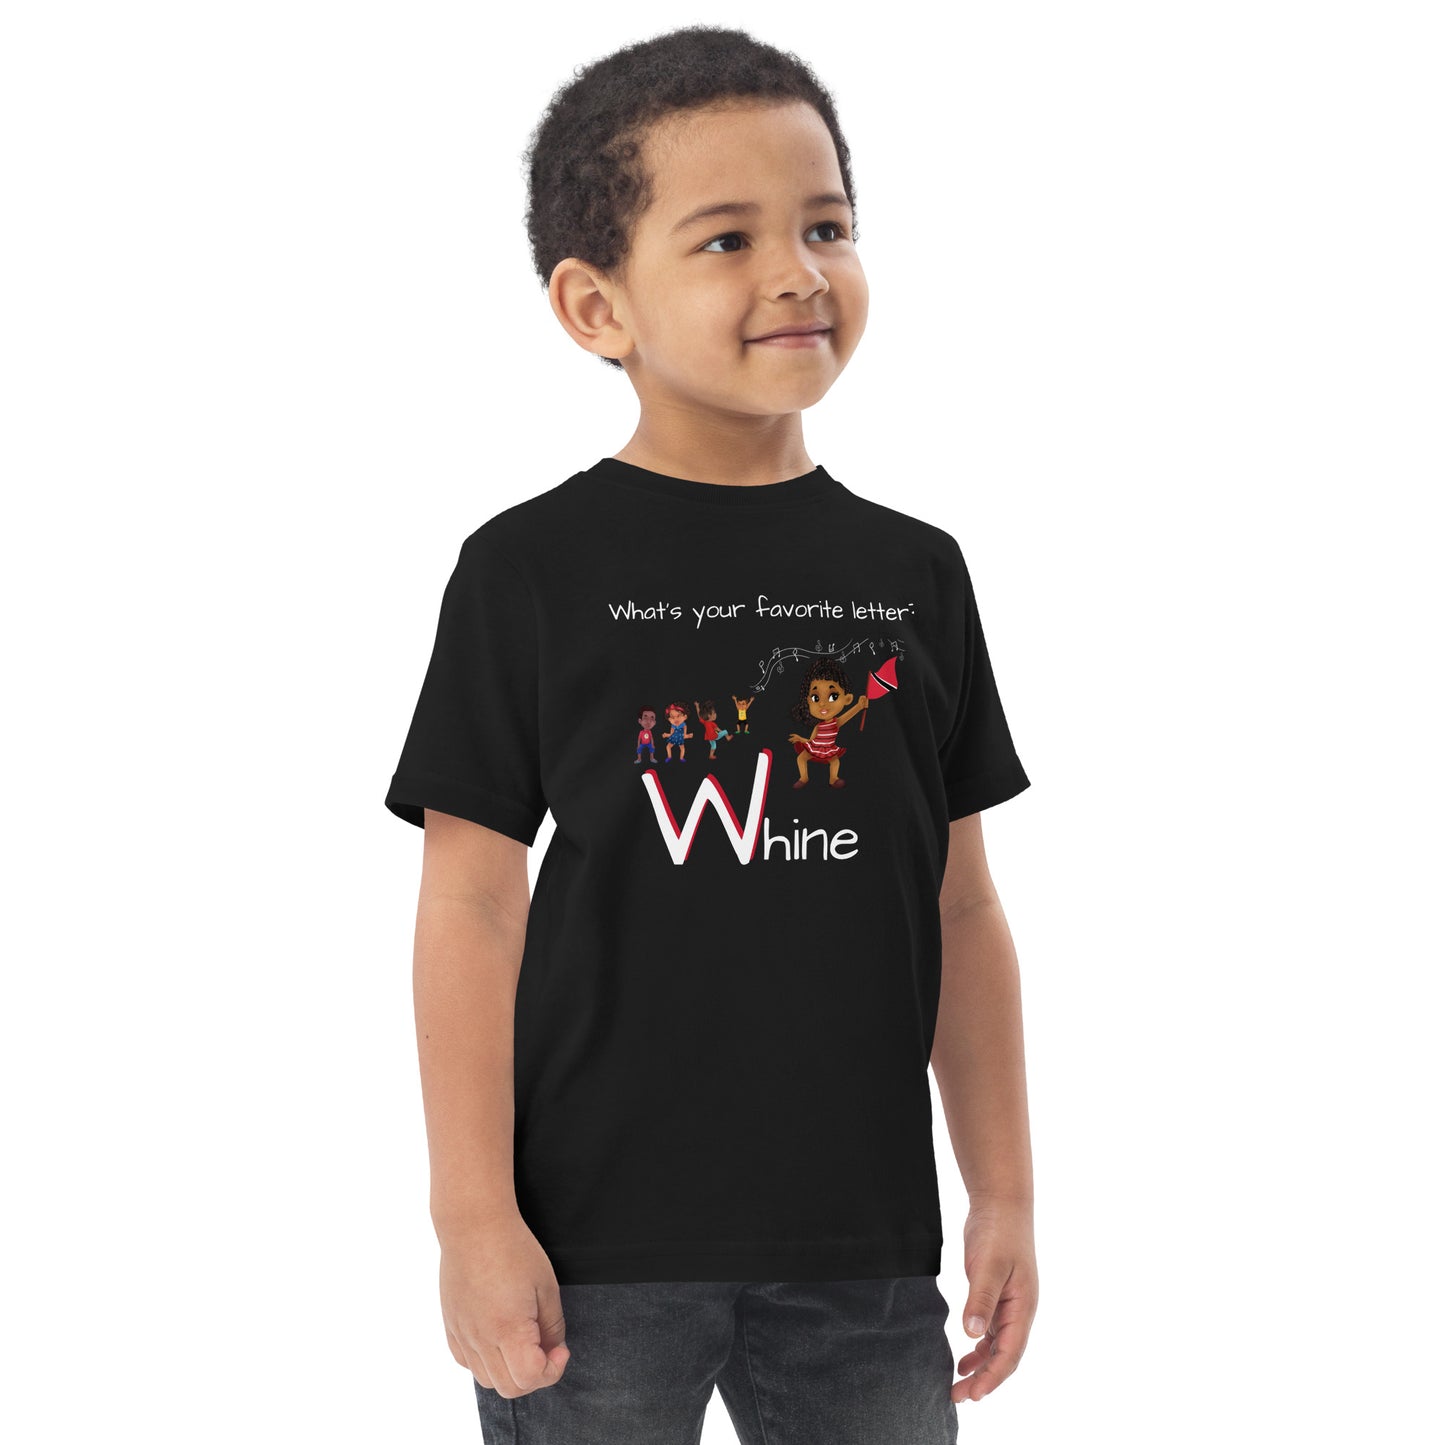 CAF4Kids Black Toddler T-shirt - Letter W